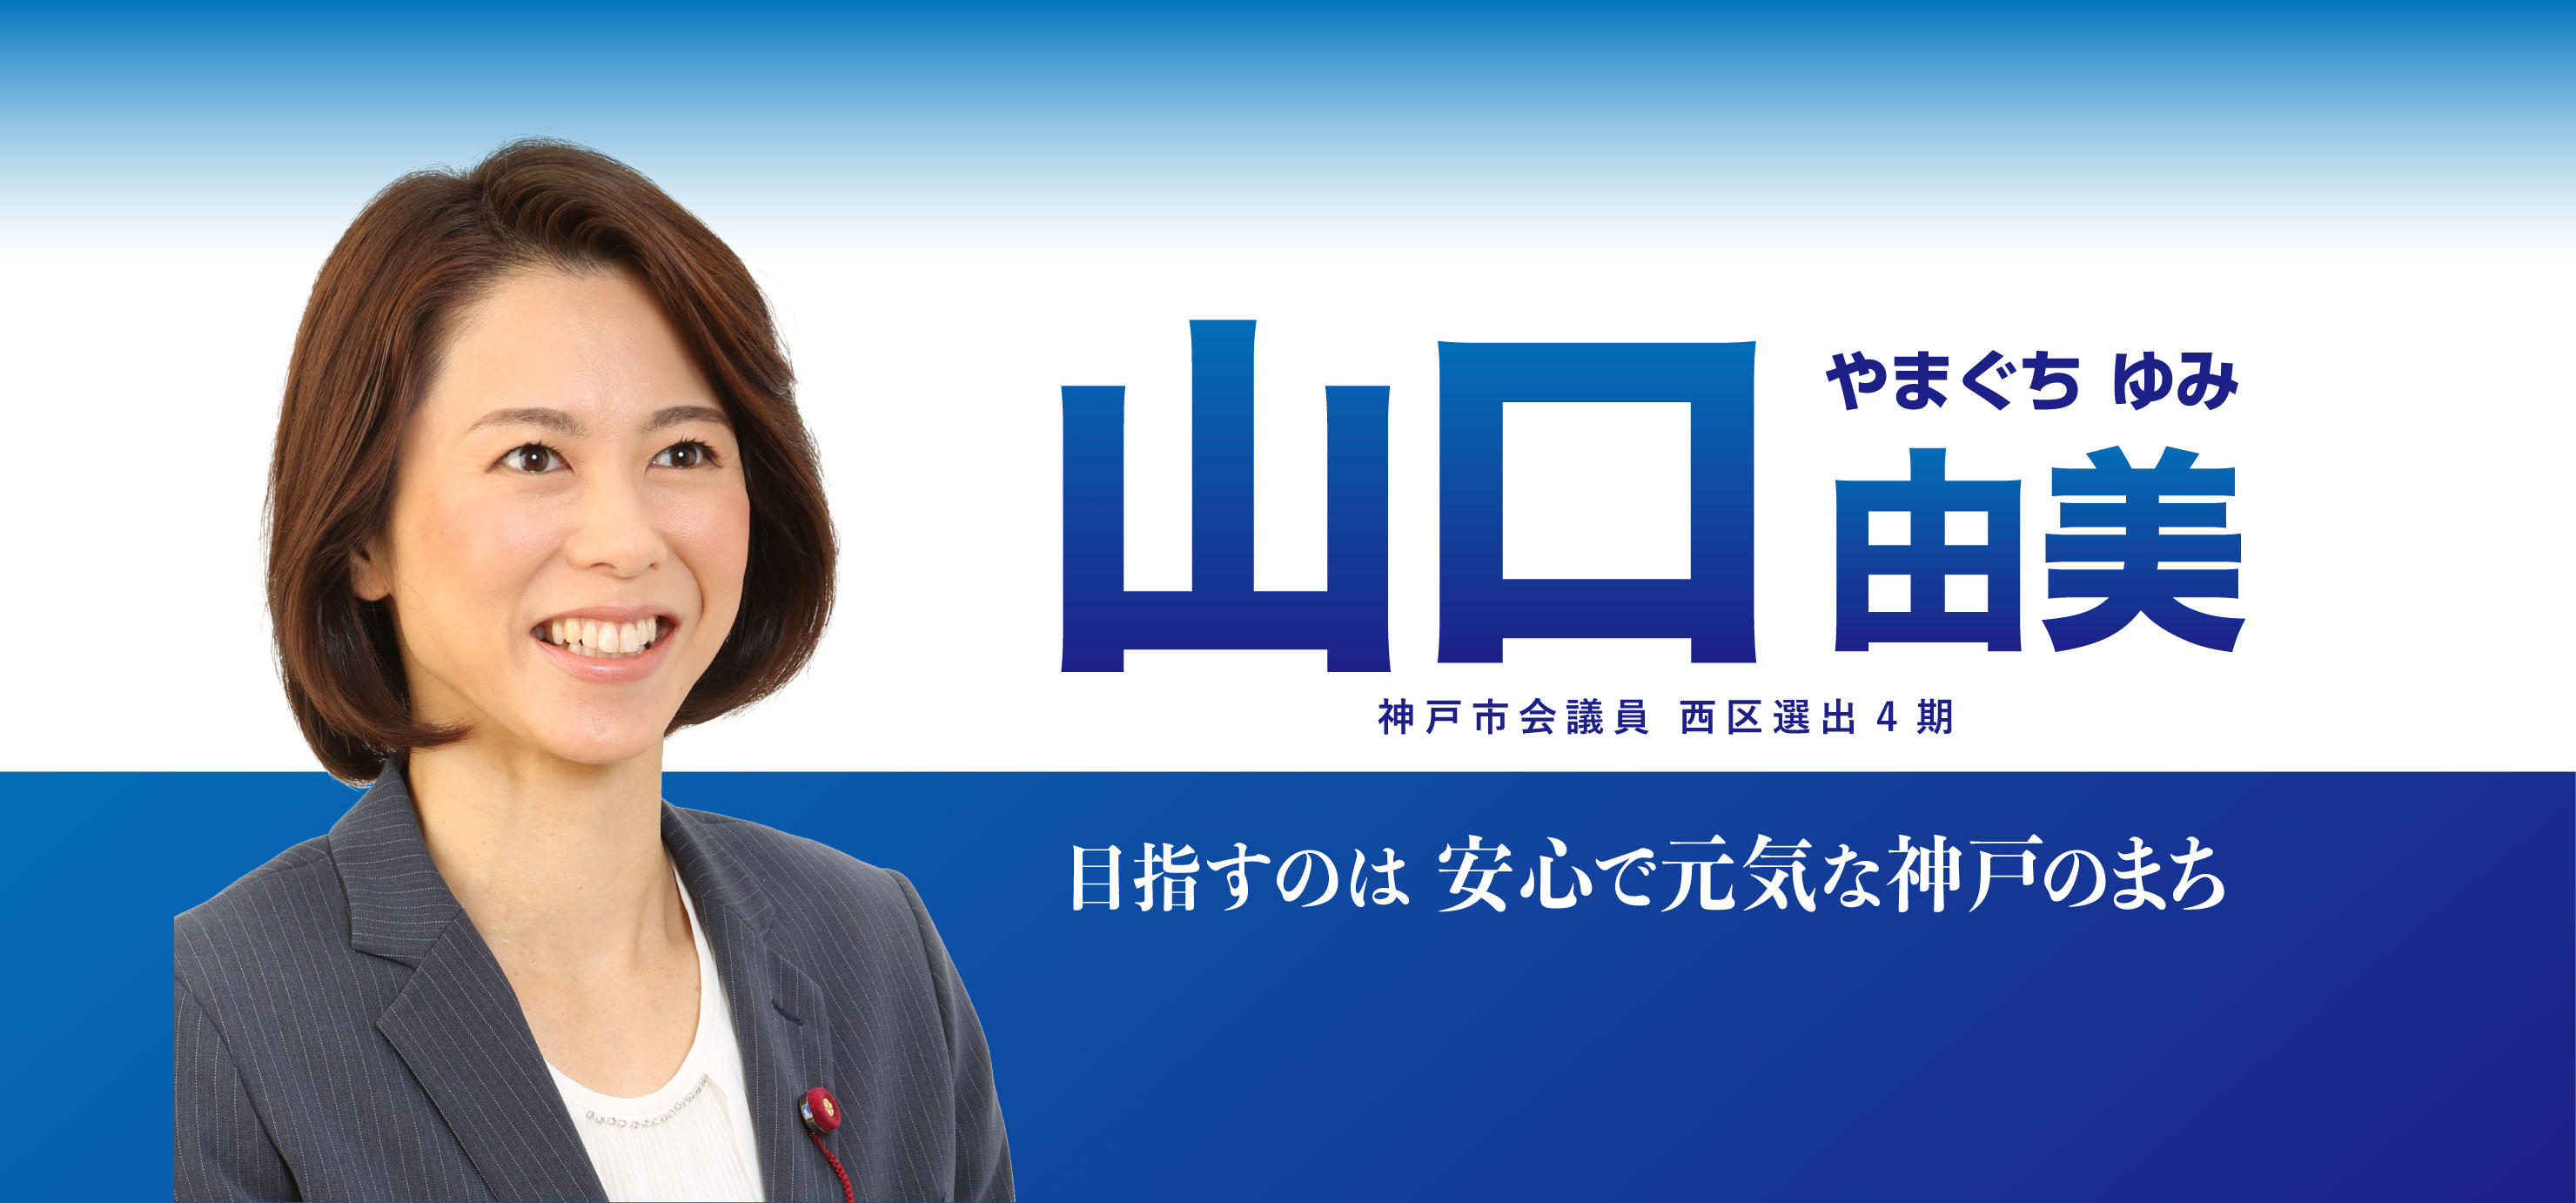 目指すは安心で元気な神戸のまち。神戸市会議員西区選出３期　山口由美